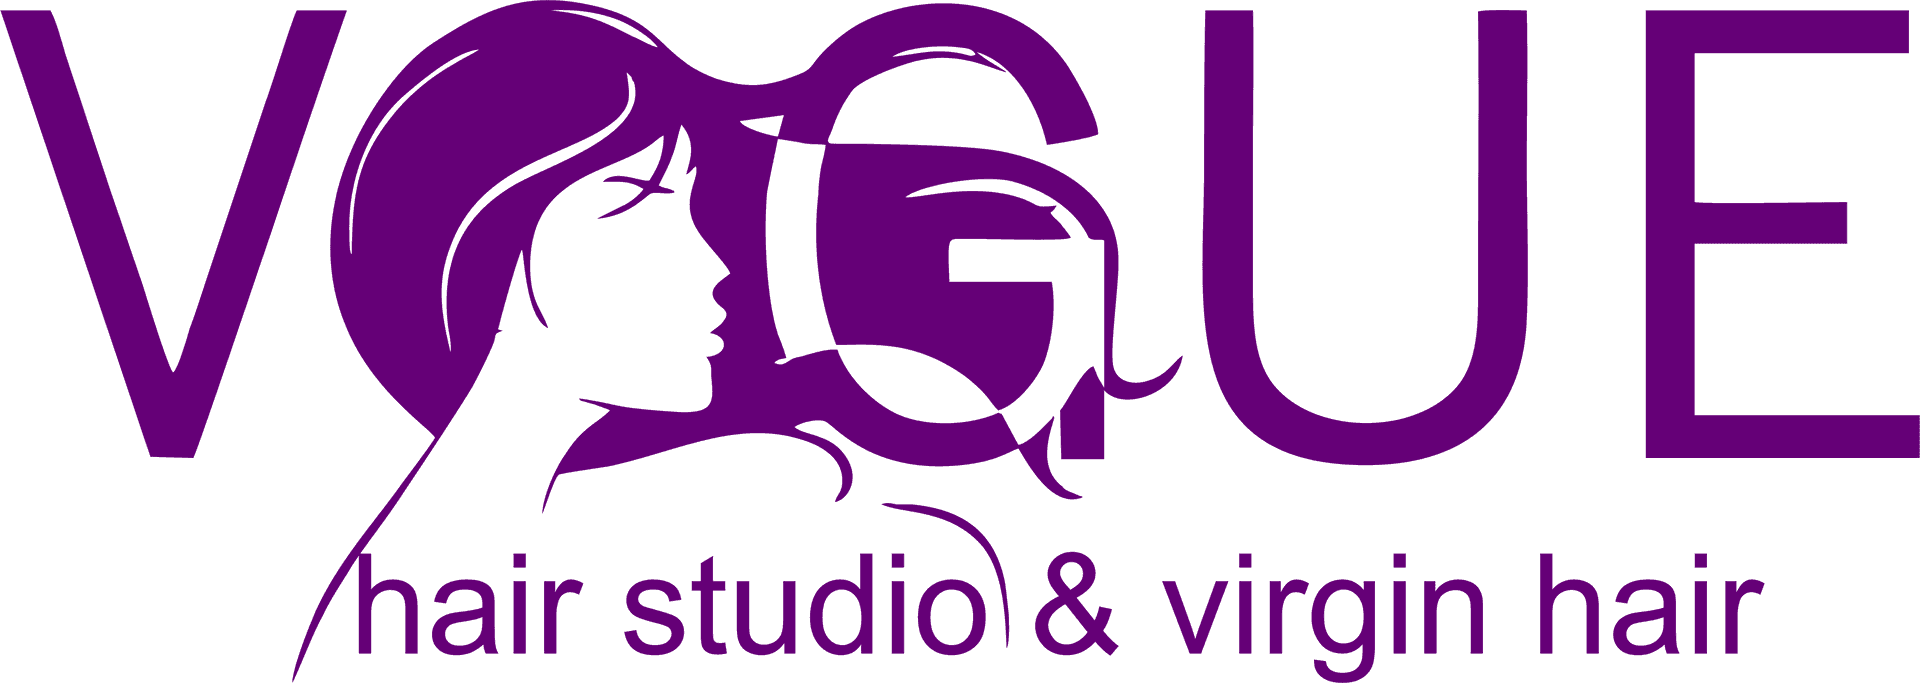 Vogue Hair Studio Logo PNG image